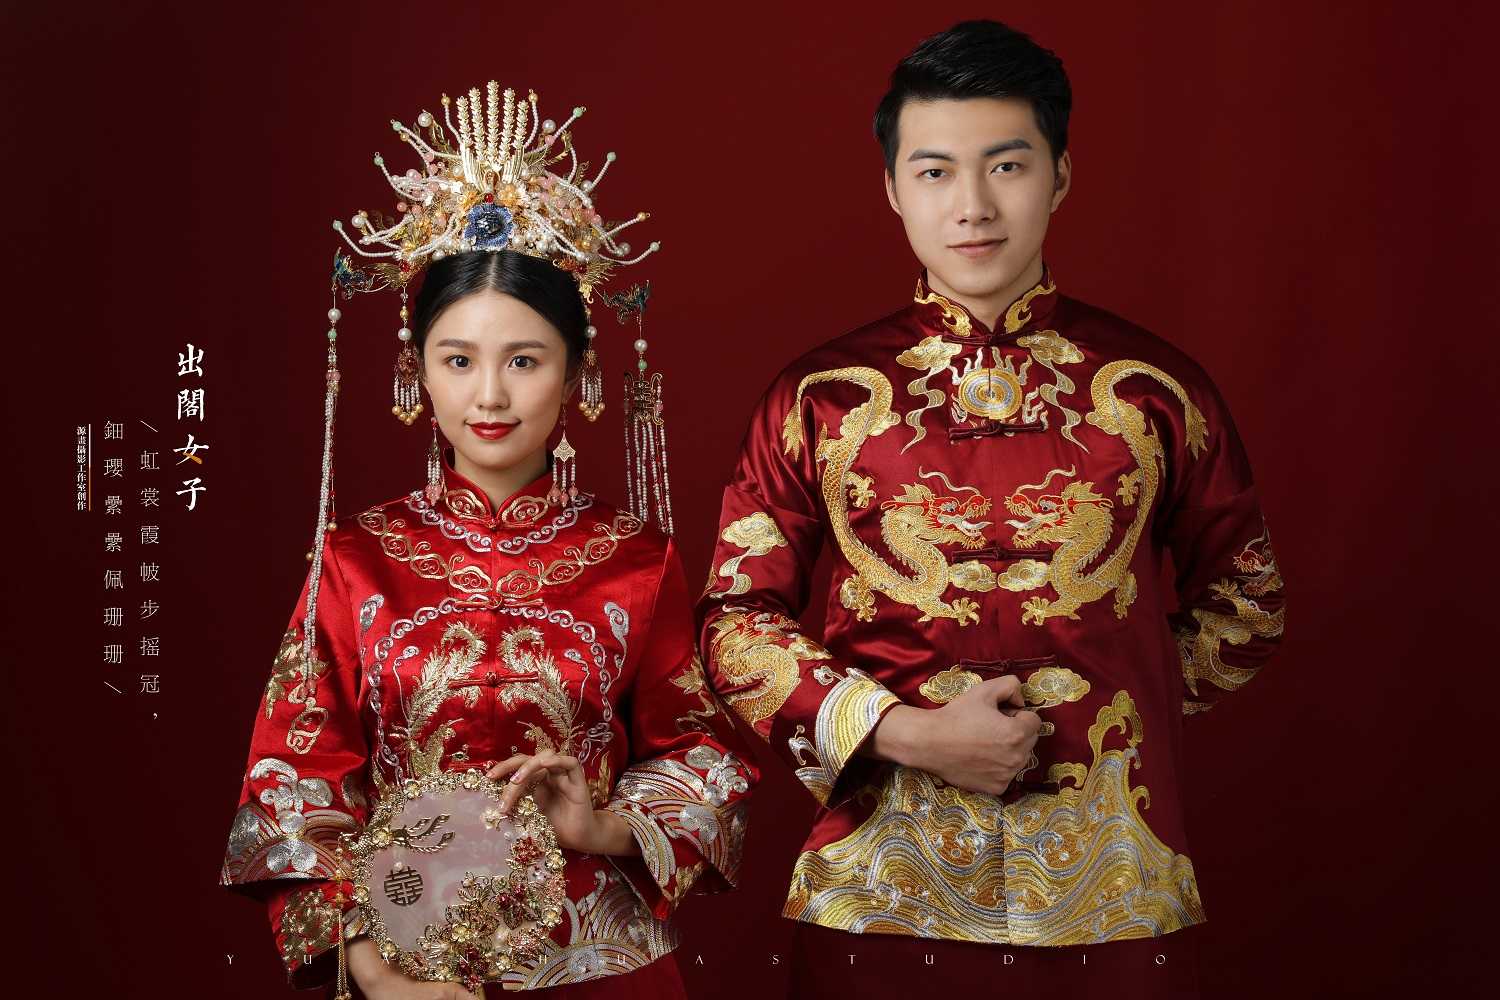 全新中式古典婚纱照惊艳上线